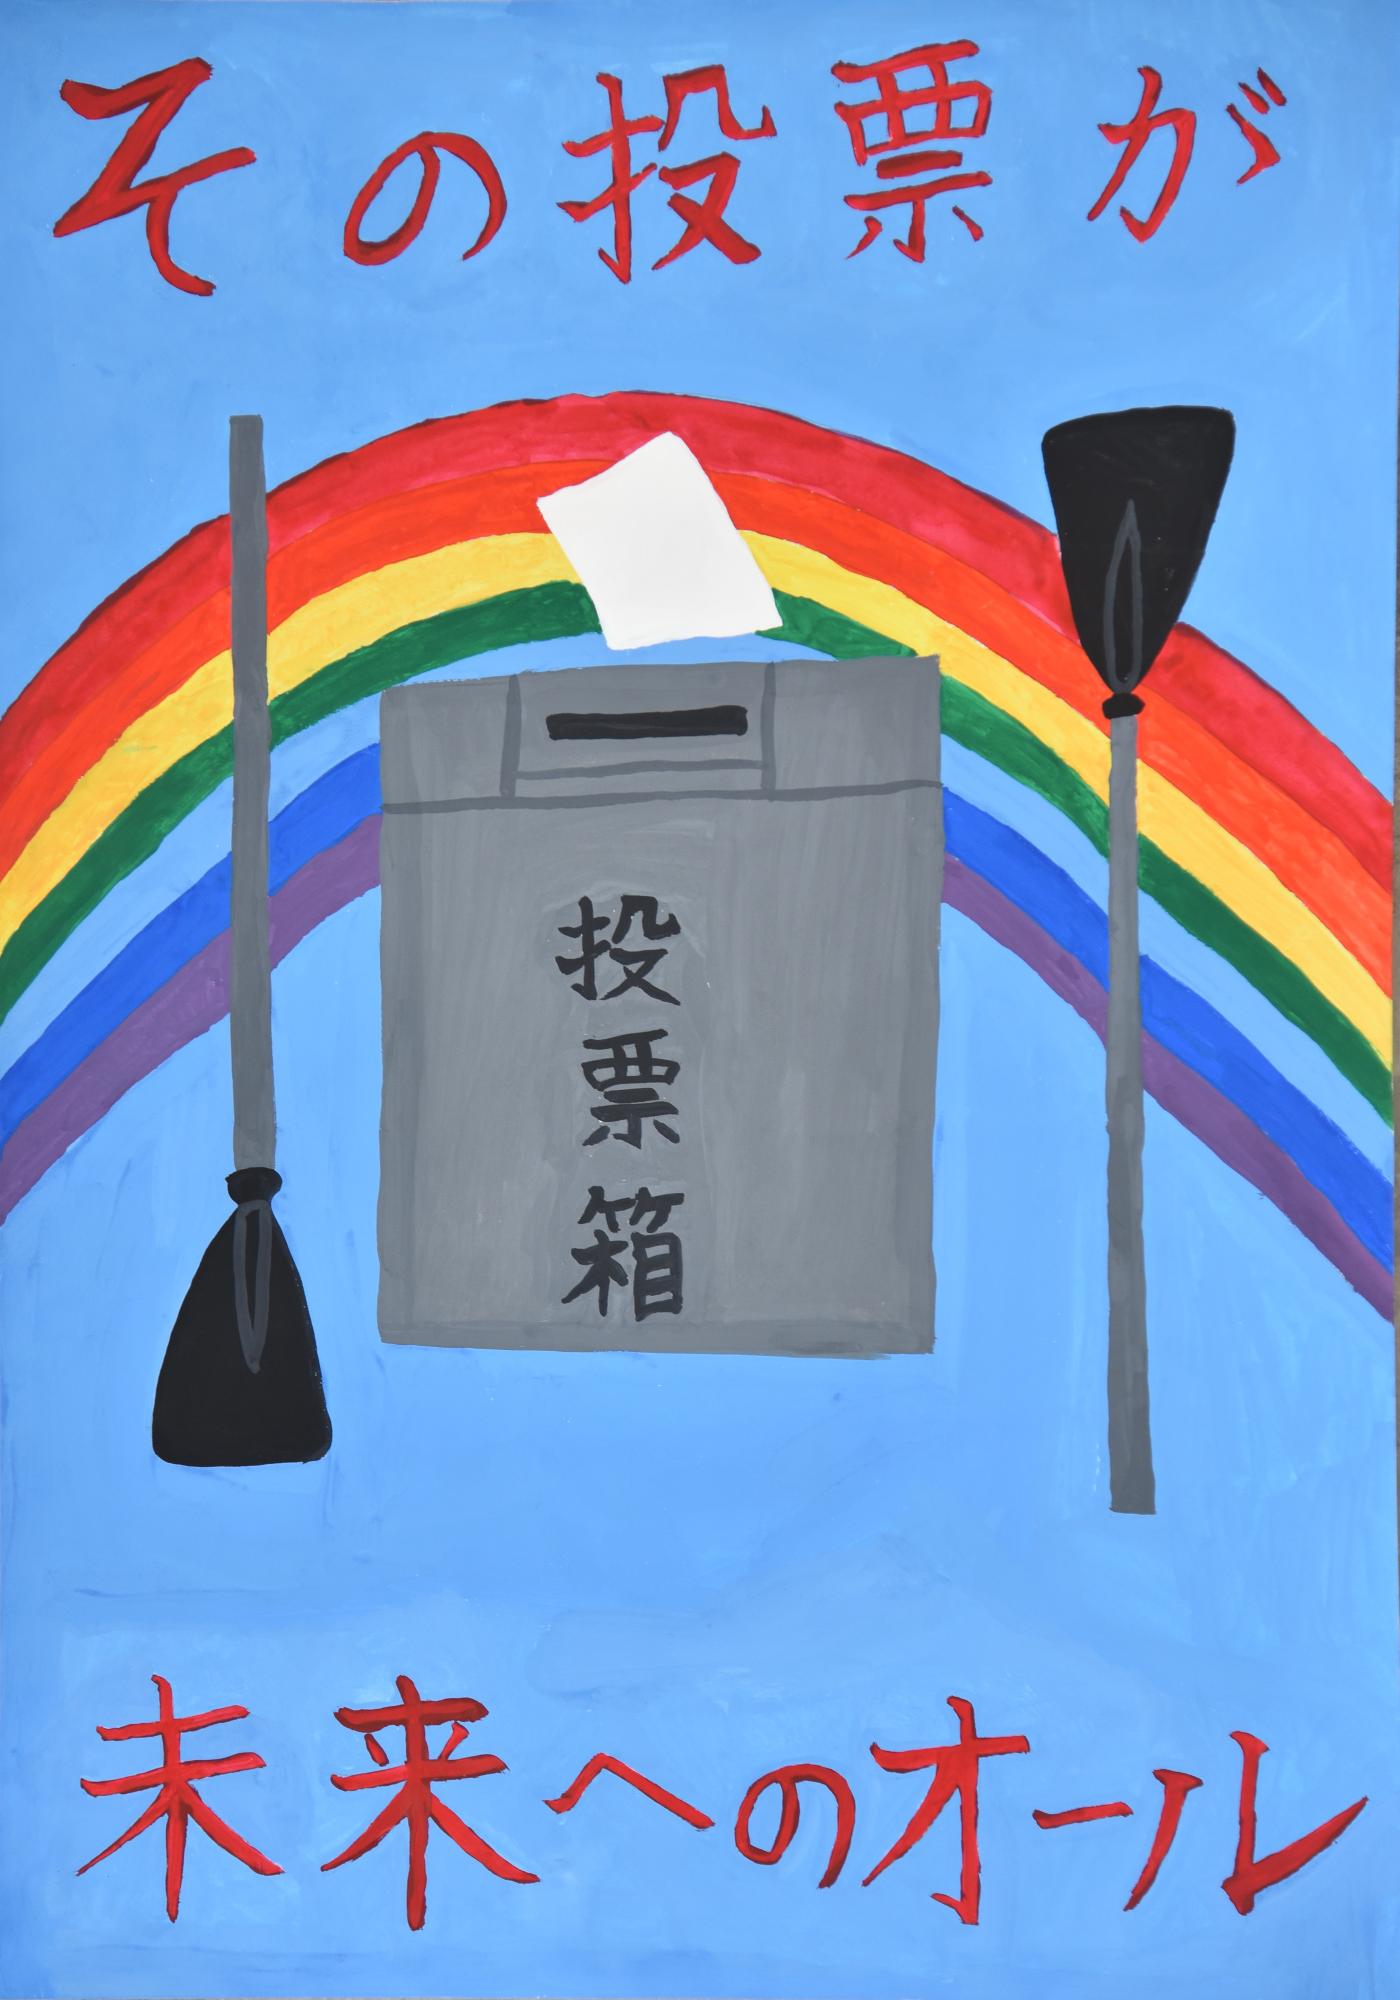 「その投票が未来へのオール」虹の背景に投票箱、投票用紙、ボートのオールが描かれているポスター